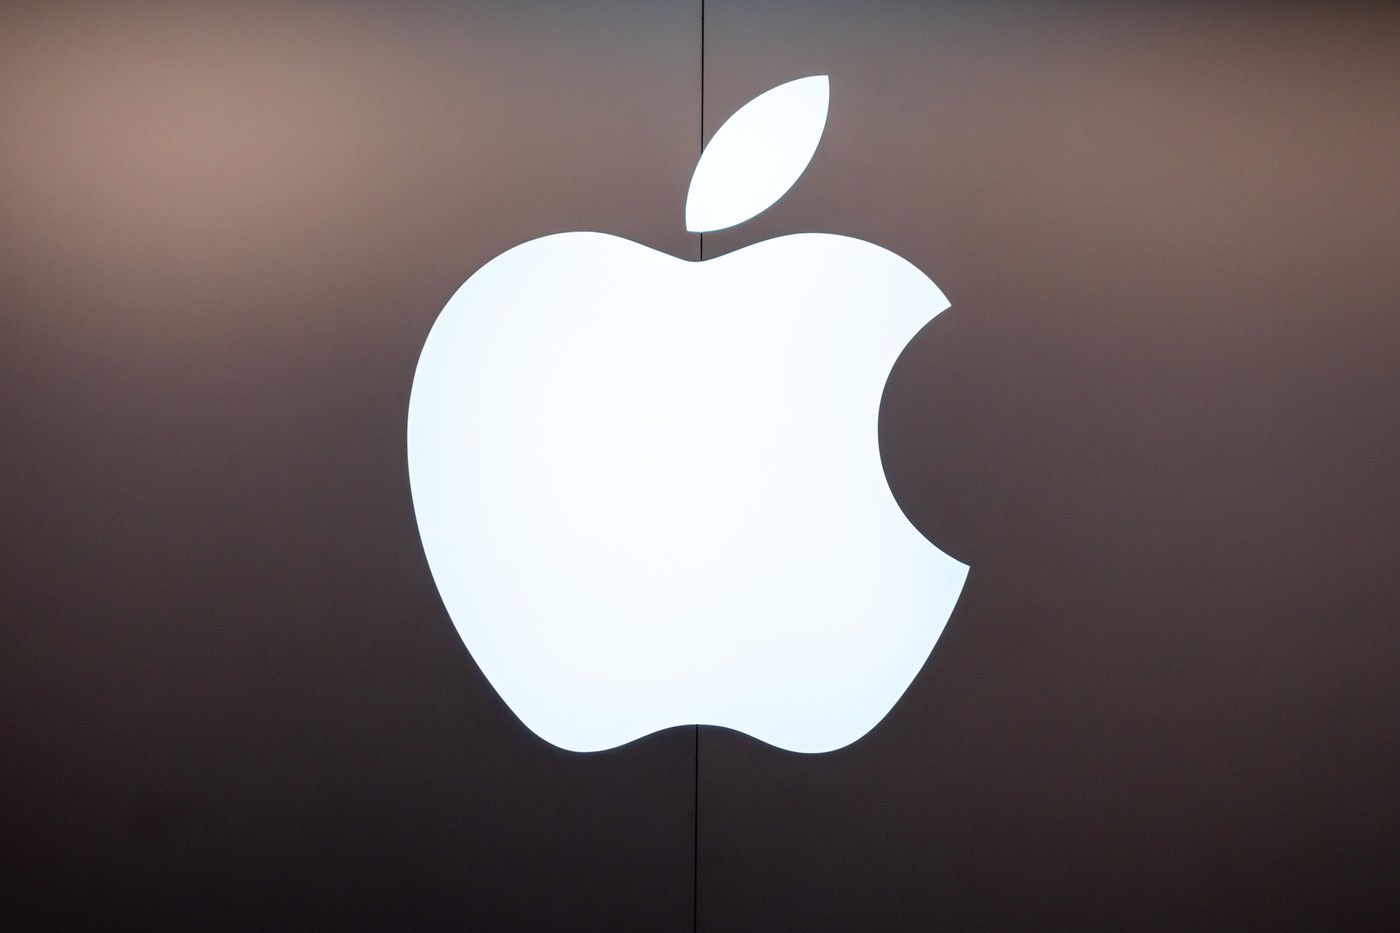 傲世皇朝登录网址 据报道，苹果将在“大约10年内”用智能眼镜取代iphone